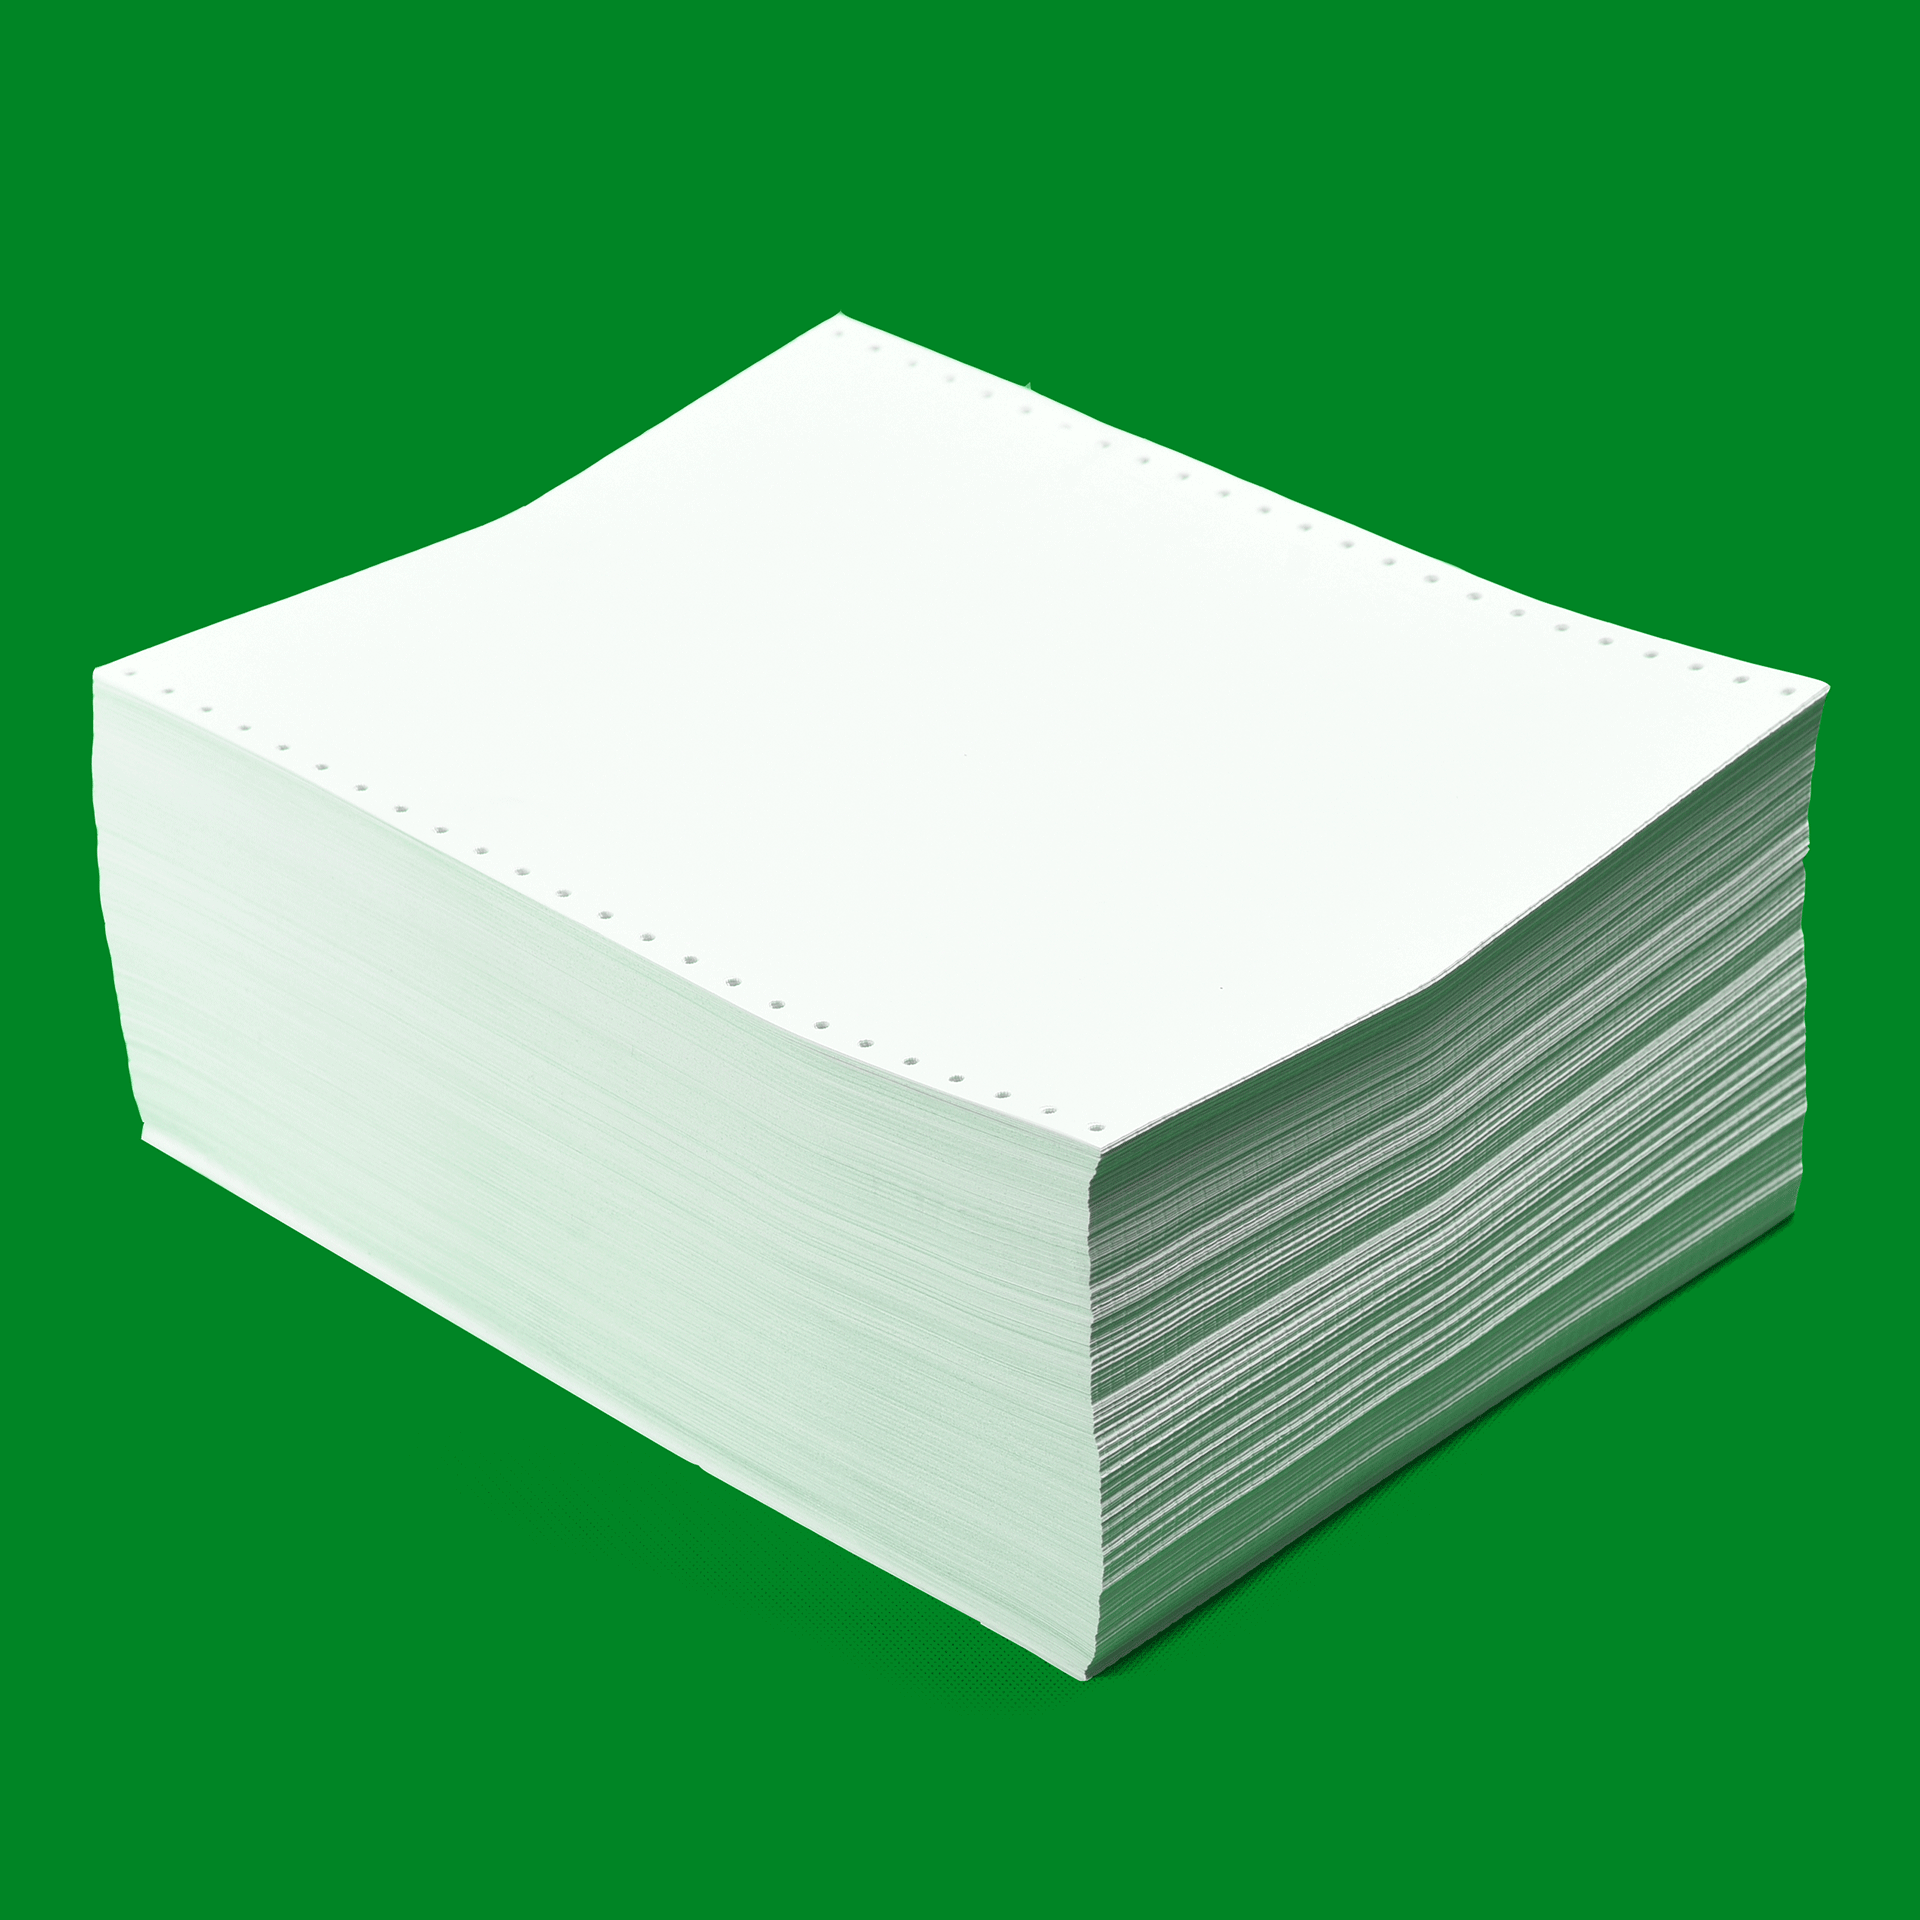 Офсетная бумага гр. Бумага а4 (офсетная 80 г/м2) (myjos). Бумага а4 (офсетная 80 г/м2) (Gustavsberg). Офсетная бумага а4 1600мм. Офсетная бумага 80 г/м2.